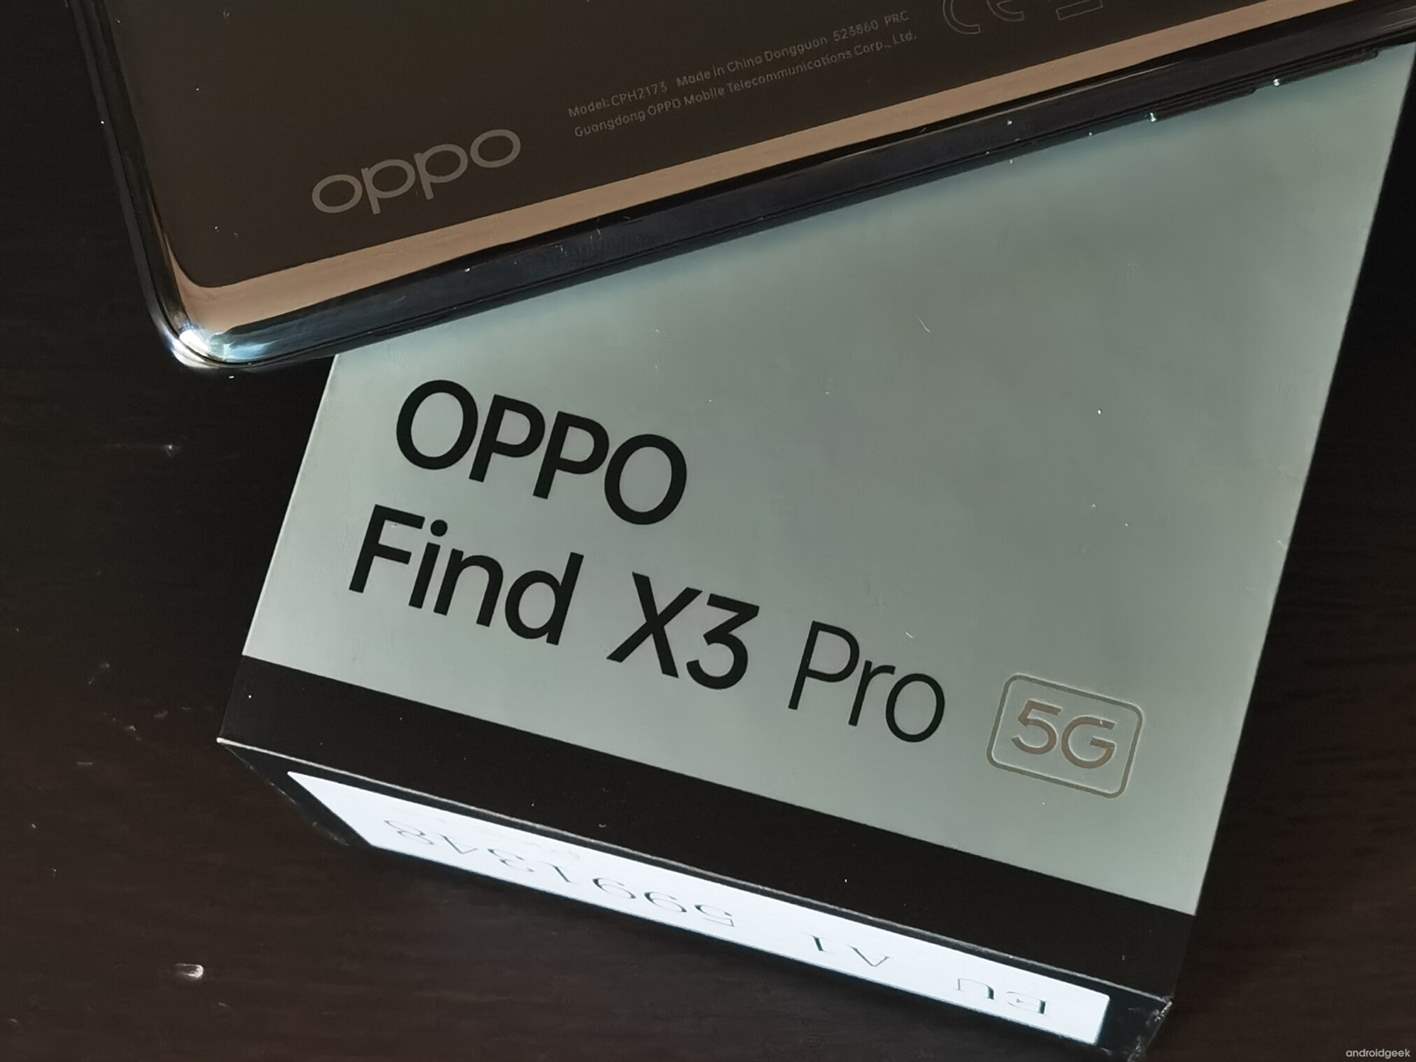 Série Oppo Find X3 é oficial. Conheçam o Oppo Find X3 Pro, Oppo Find X3 Neo e Oppo Find X3 Lite 1